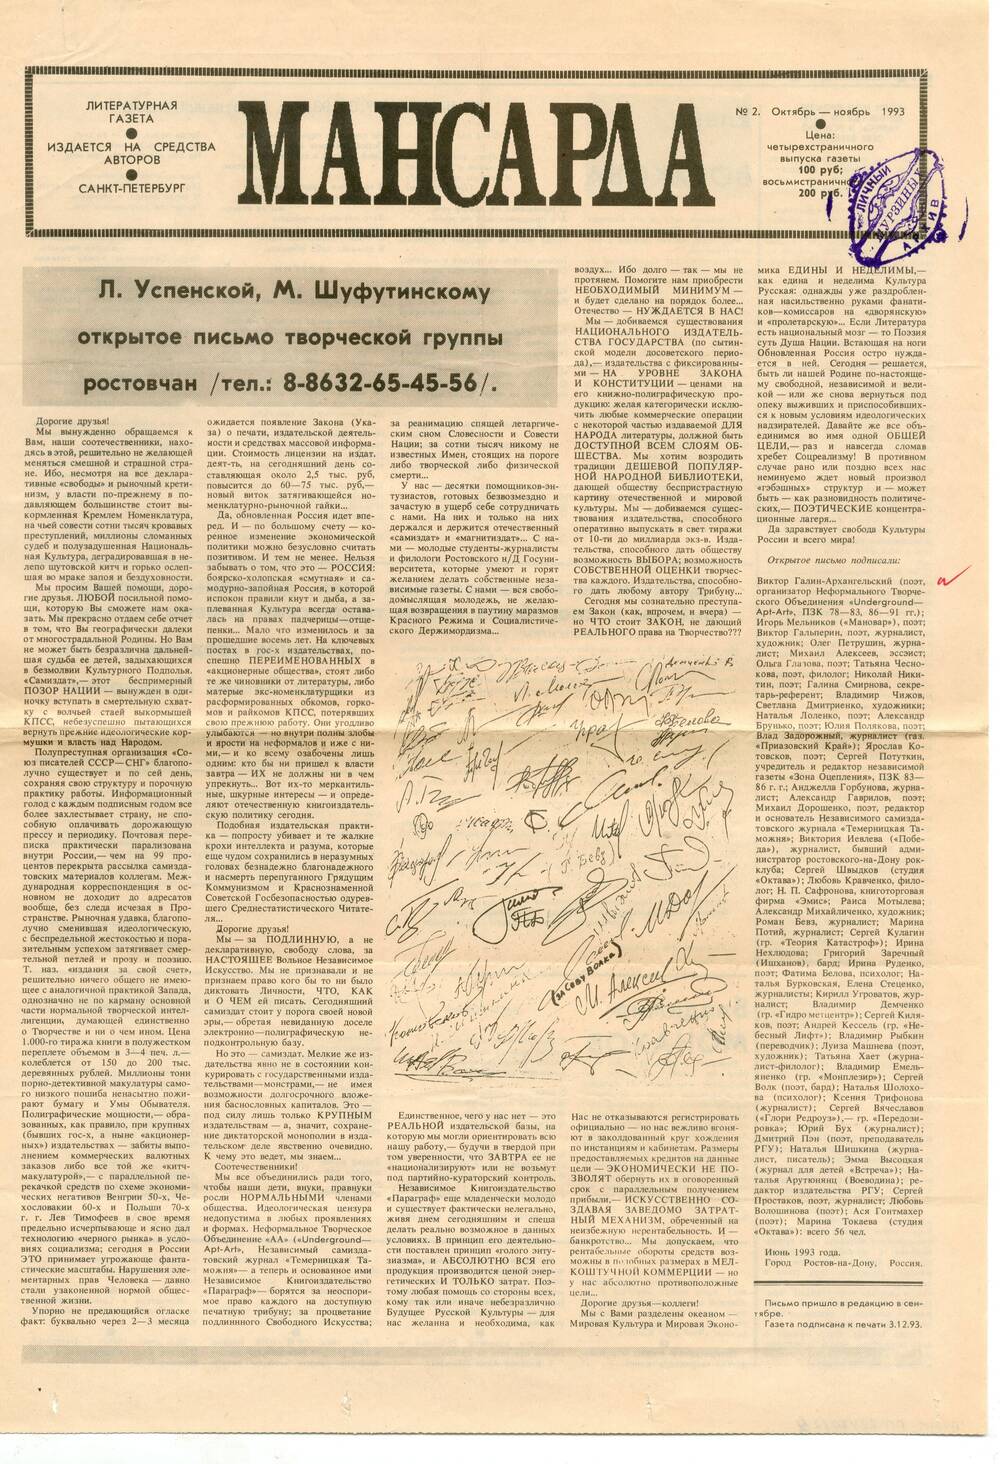 Литературная газета Мансарда, № 2 октябрь-ноябрь 1993 г.